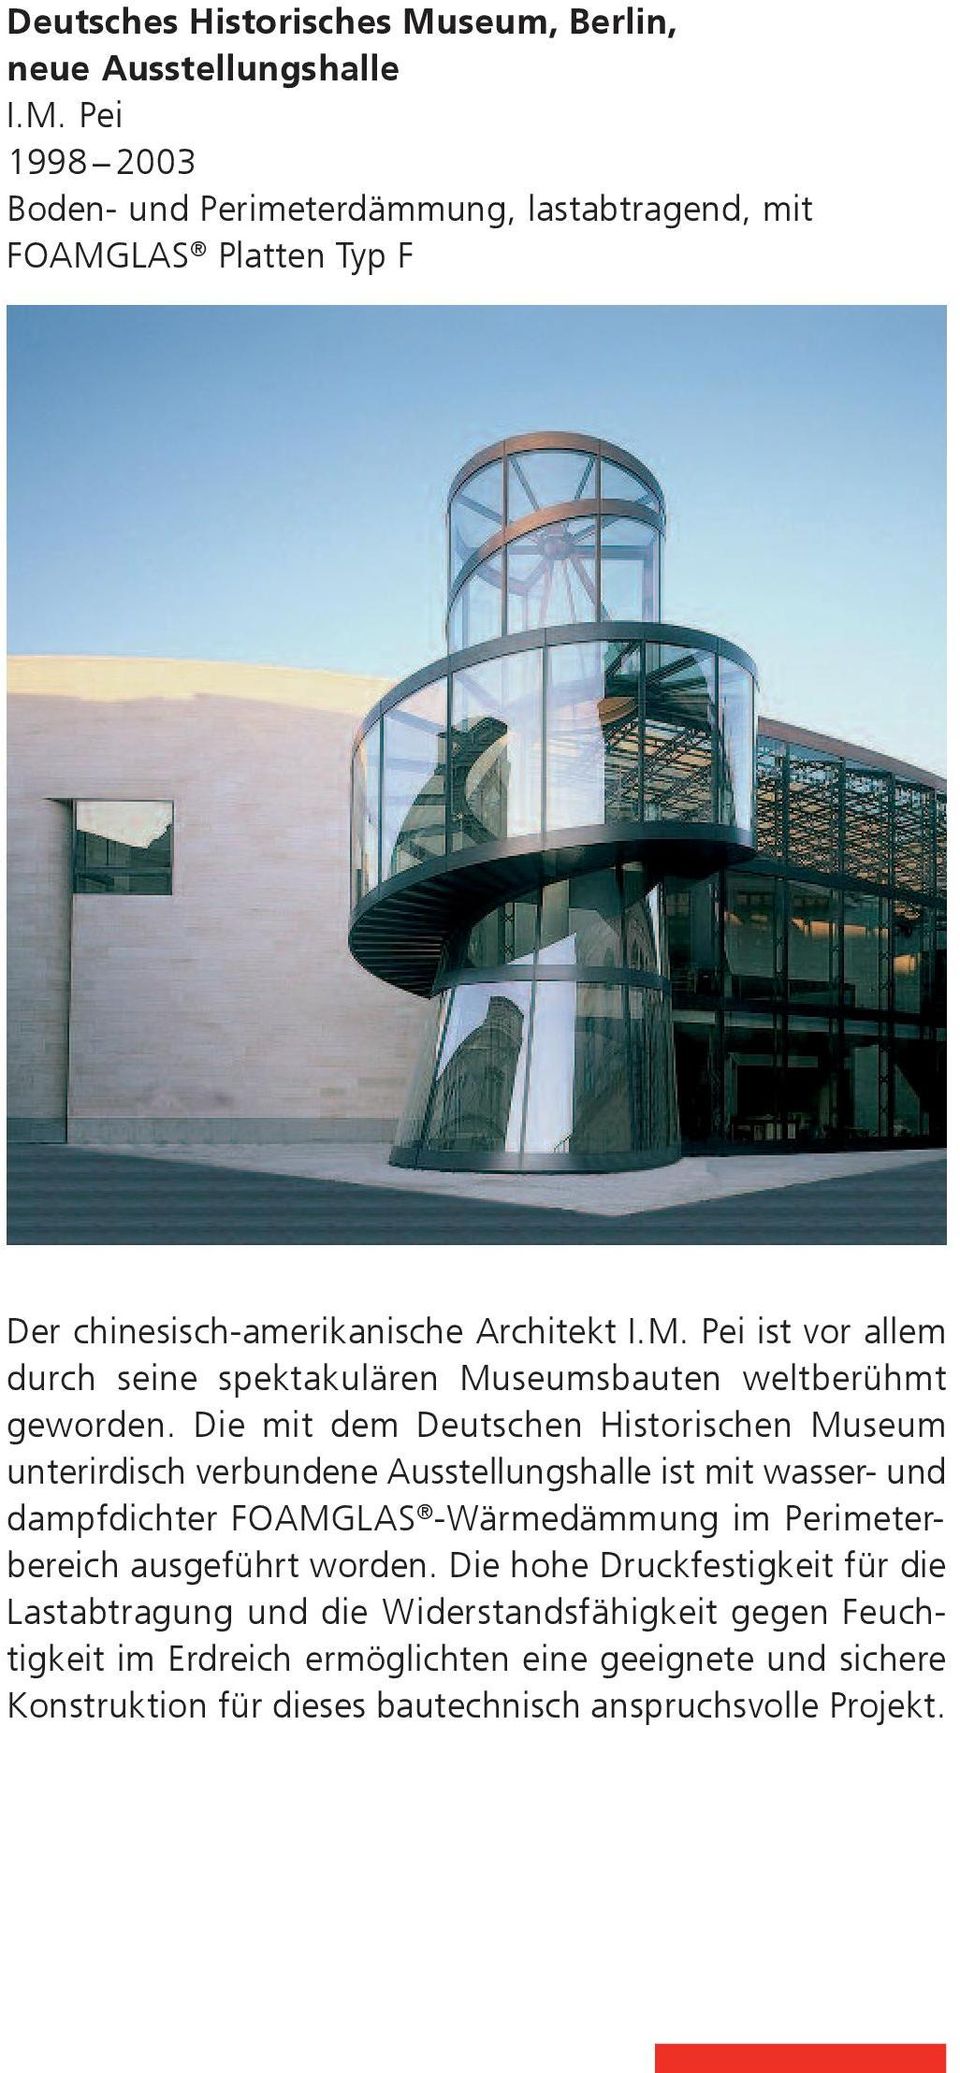 Die mit dem Deutschen Historischen Museum unterirdisch verbundene Ausstellungshalle ist mit wasser- und dampfdichter FOAMGLAS -Wärmedämmung im Perimeterbereich